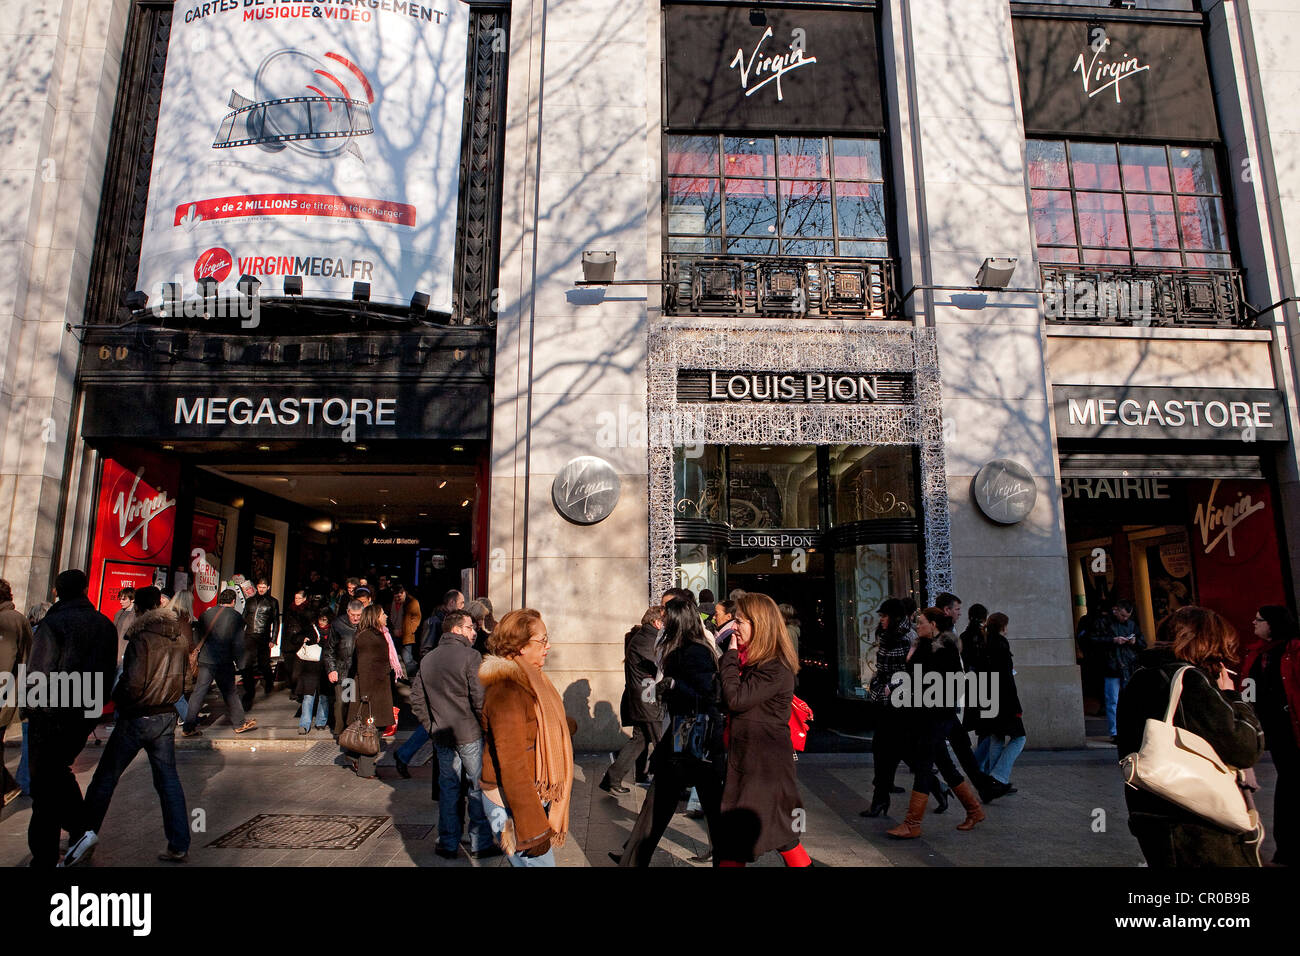 France, Paris , Virgin Megastore on Avenue des Champs Elysees Stock Photo -  Alamy